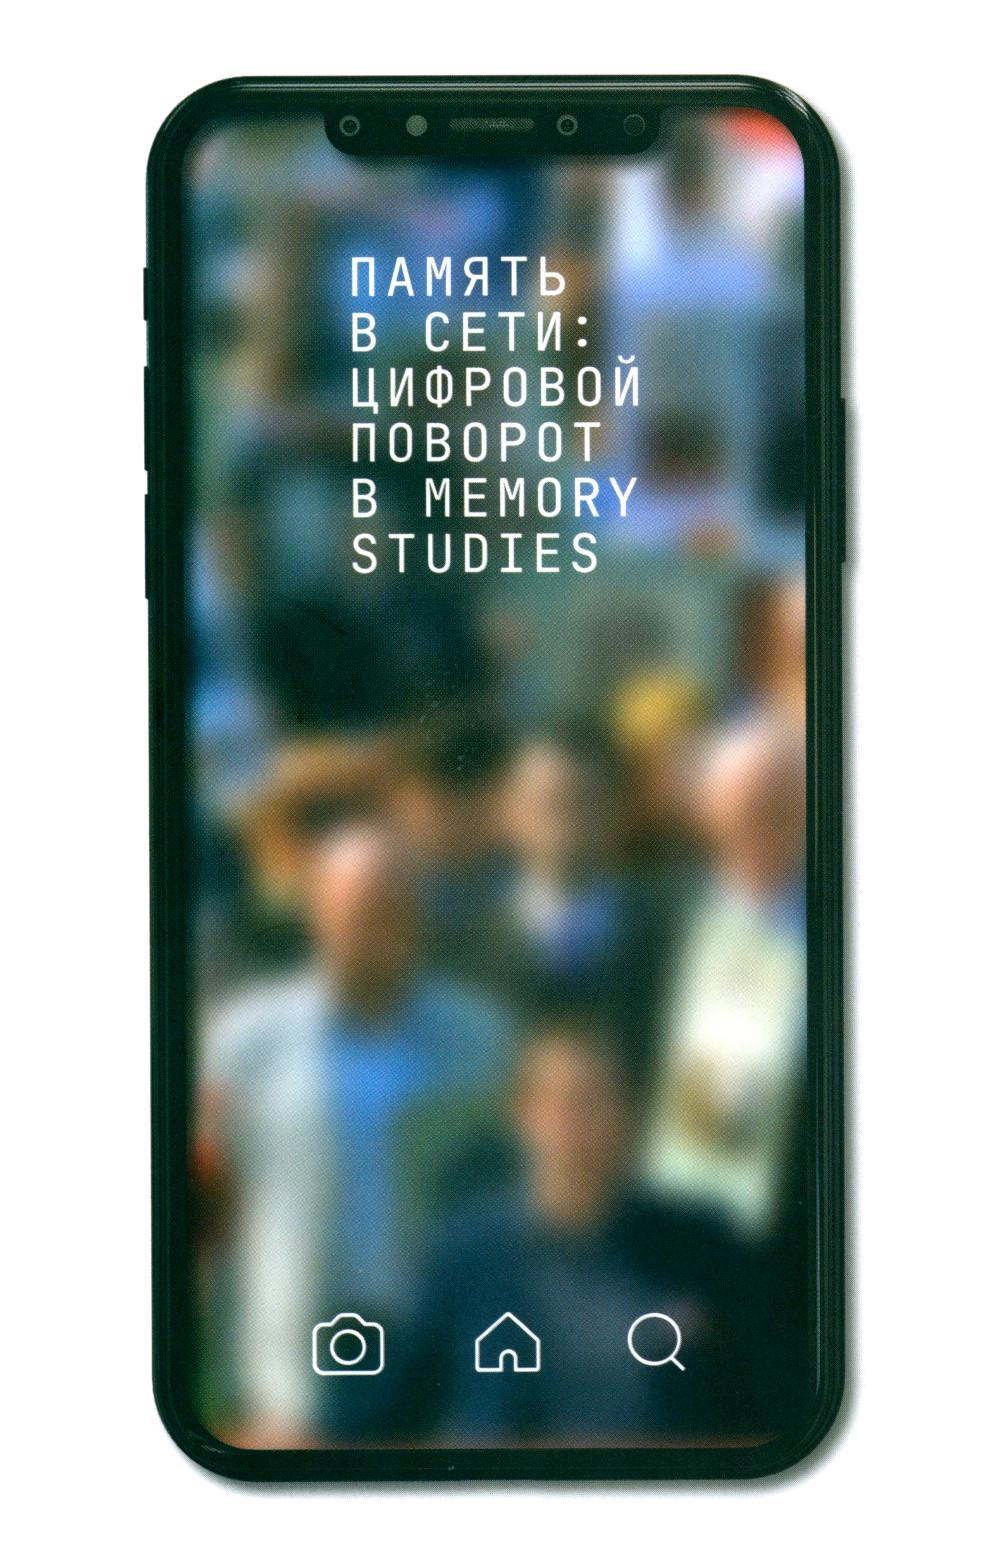 Память в сети: цифровой поворот в memory studies: сборник статей